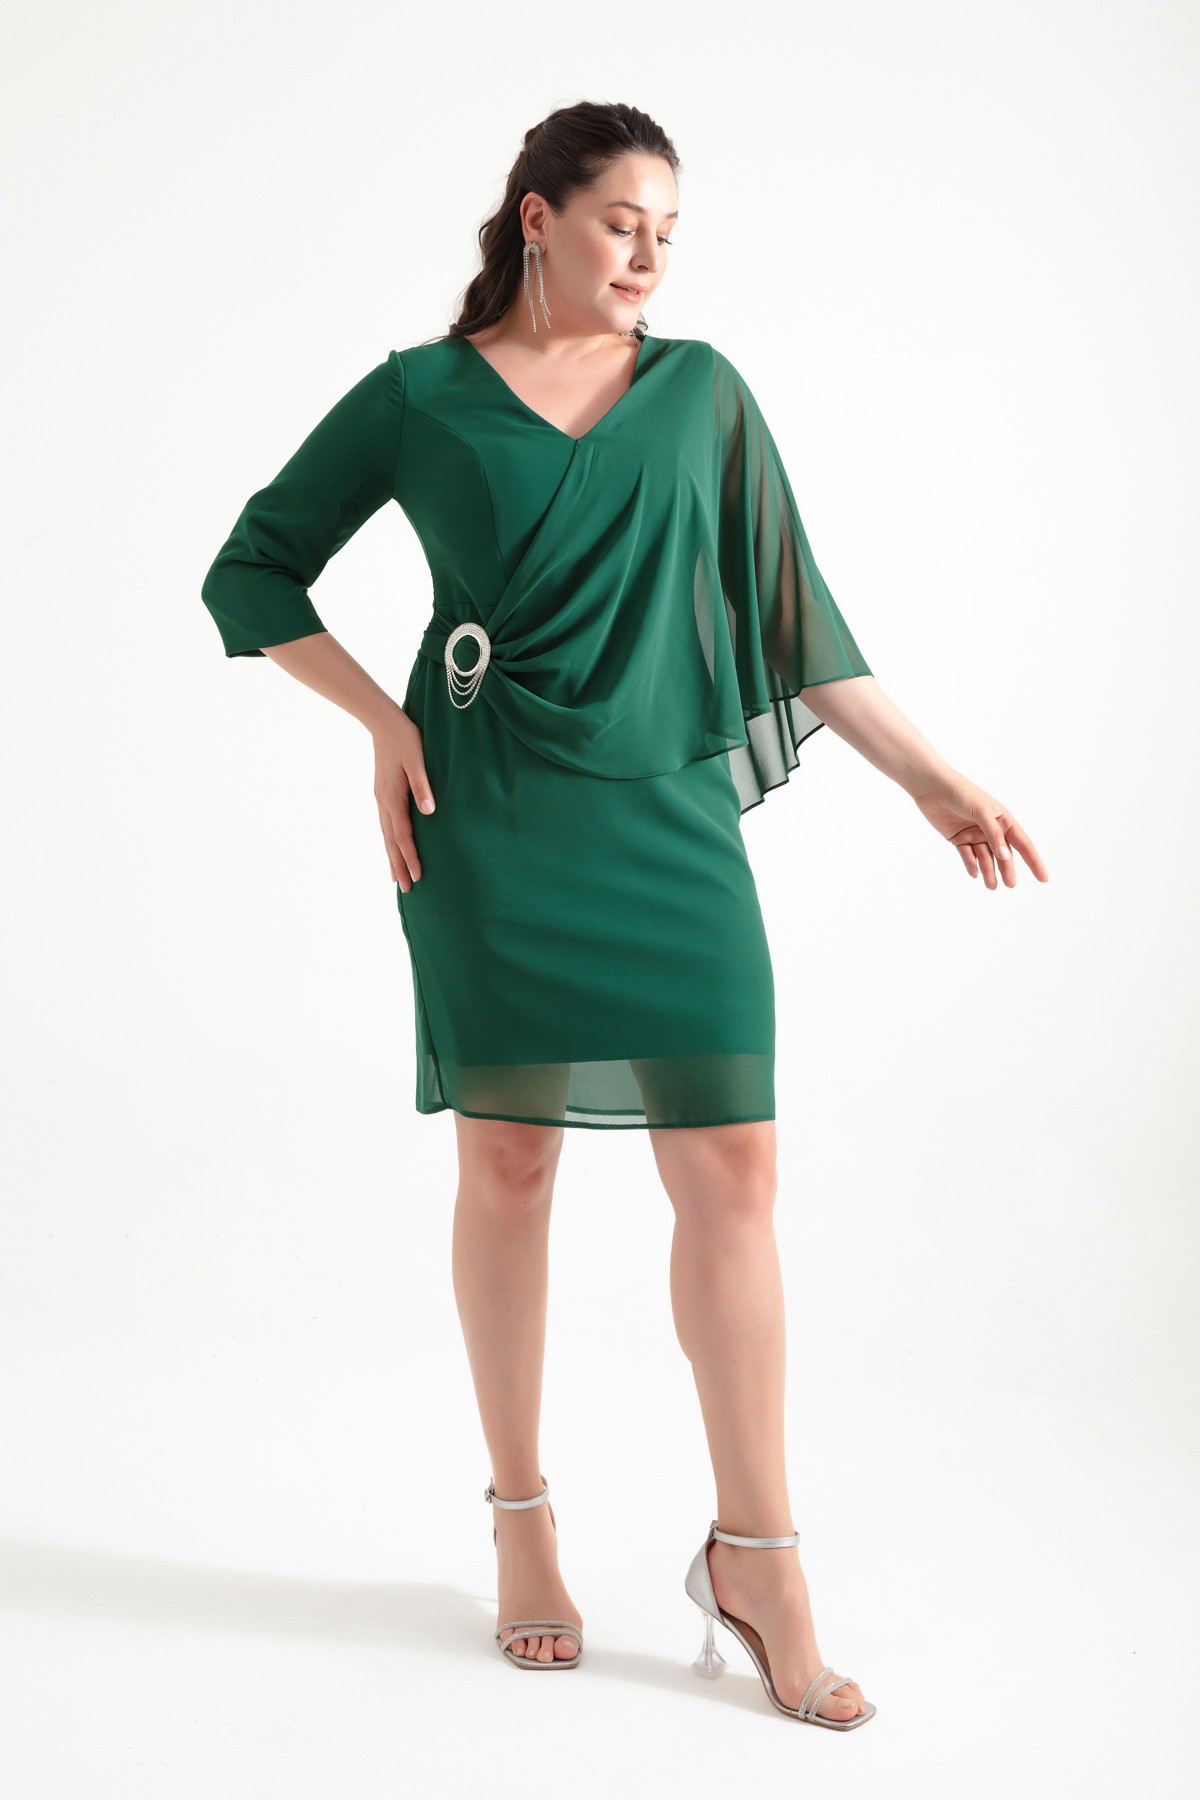 Kadın V Yaka Taşlı Büyük Beden Abiye Elbise - Zümrüt Yeşili